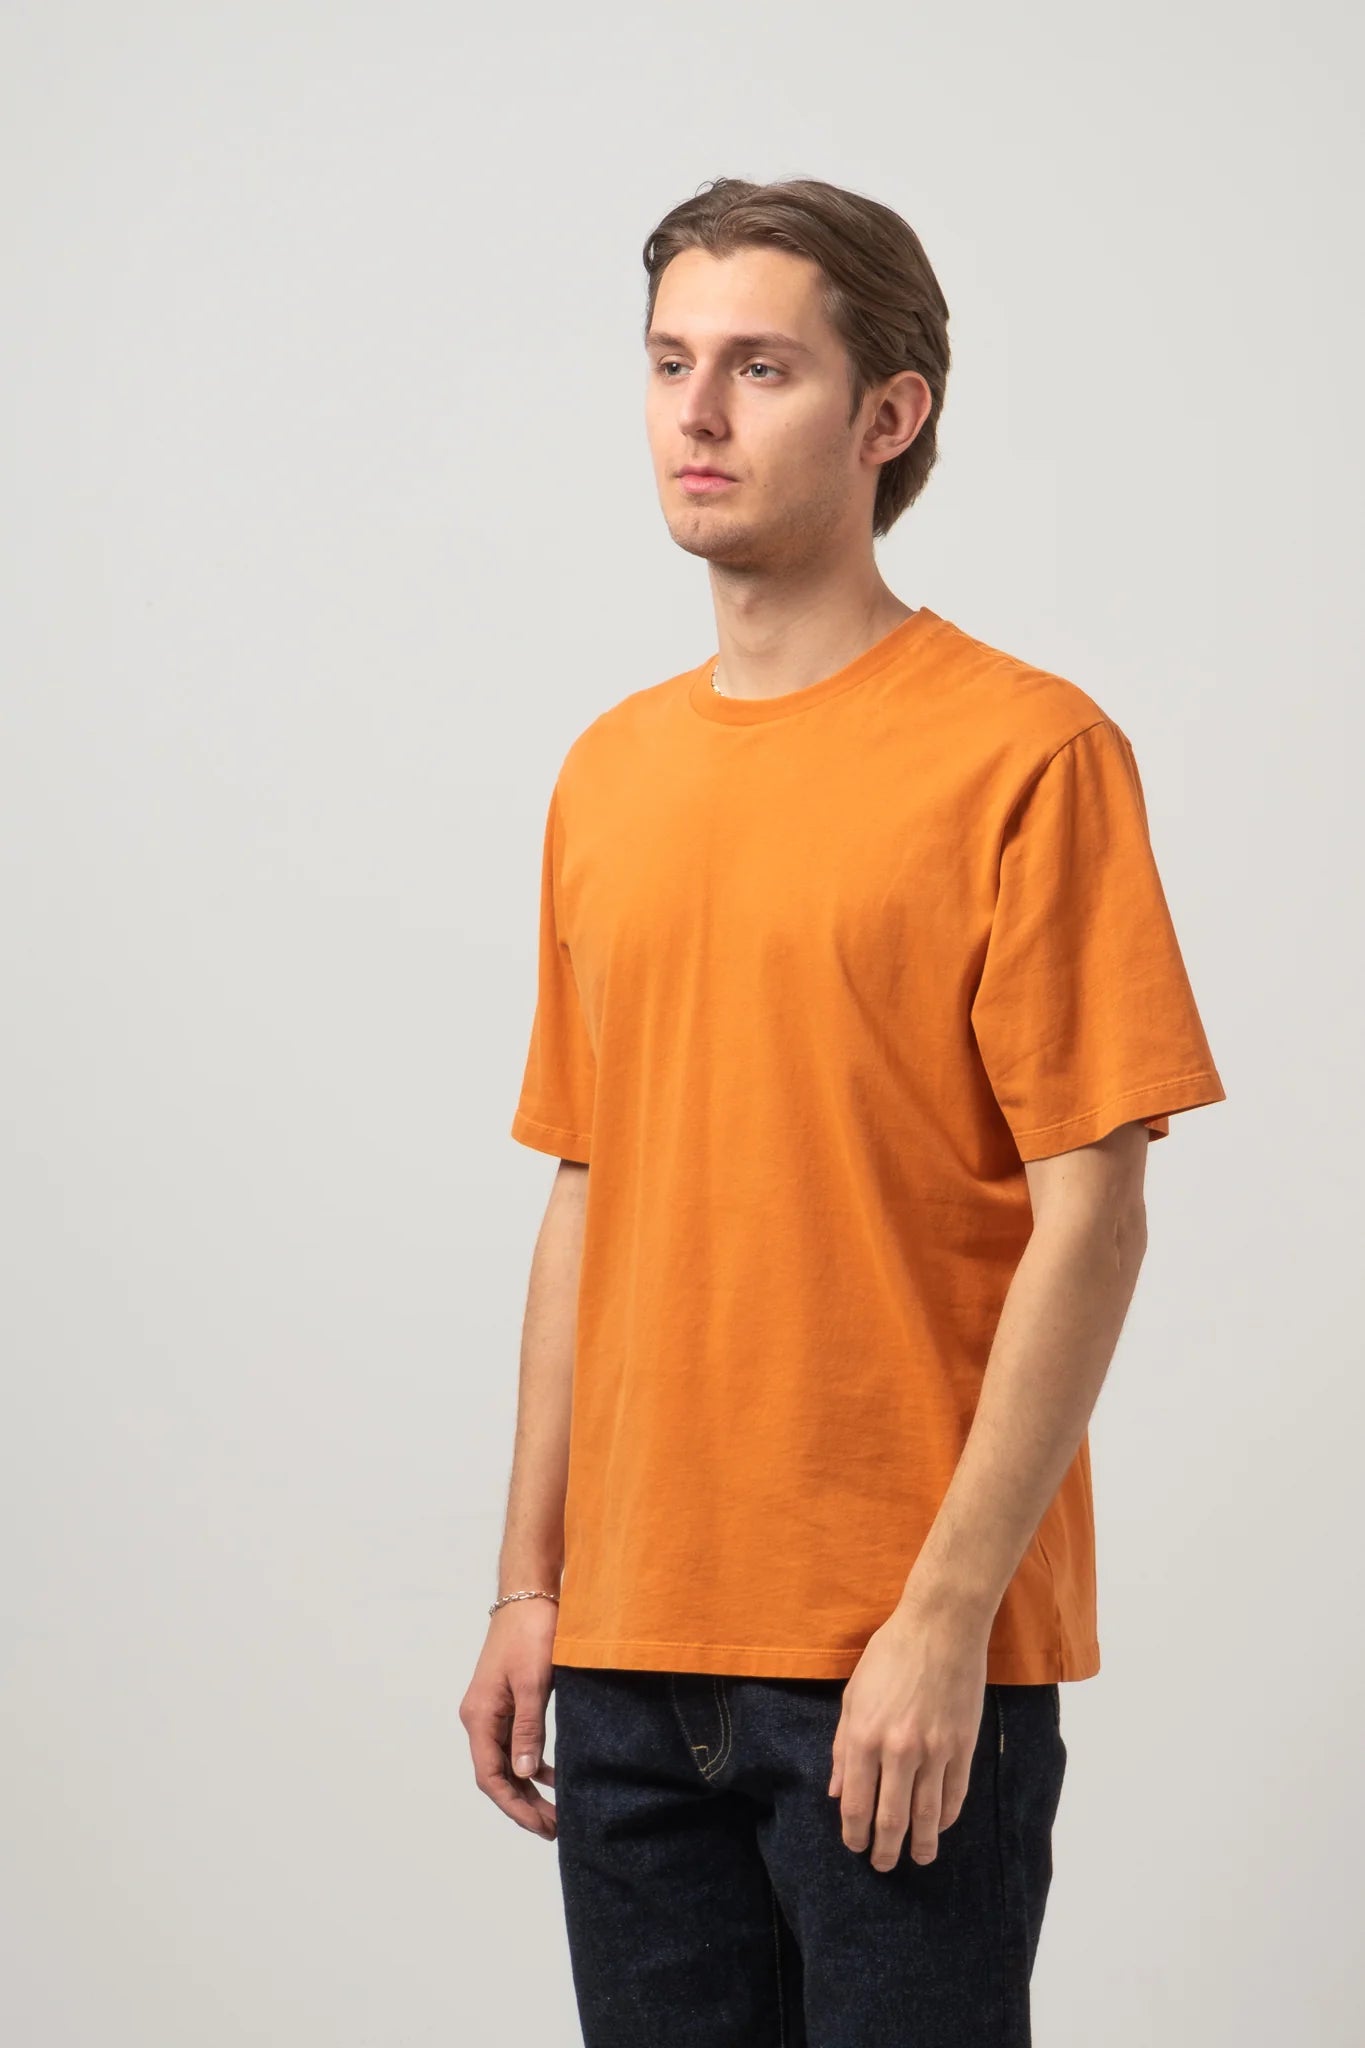 C.O.F. Studio Crewneck T-Shirt in orange